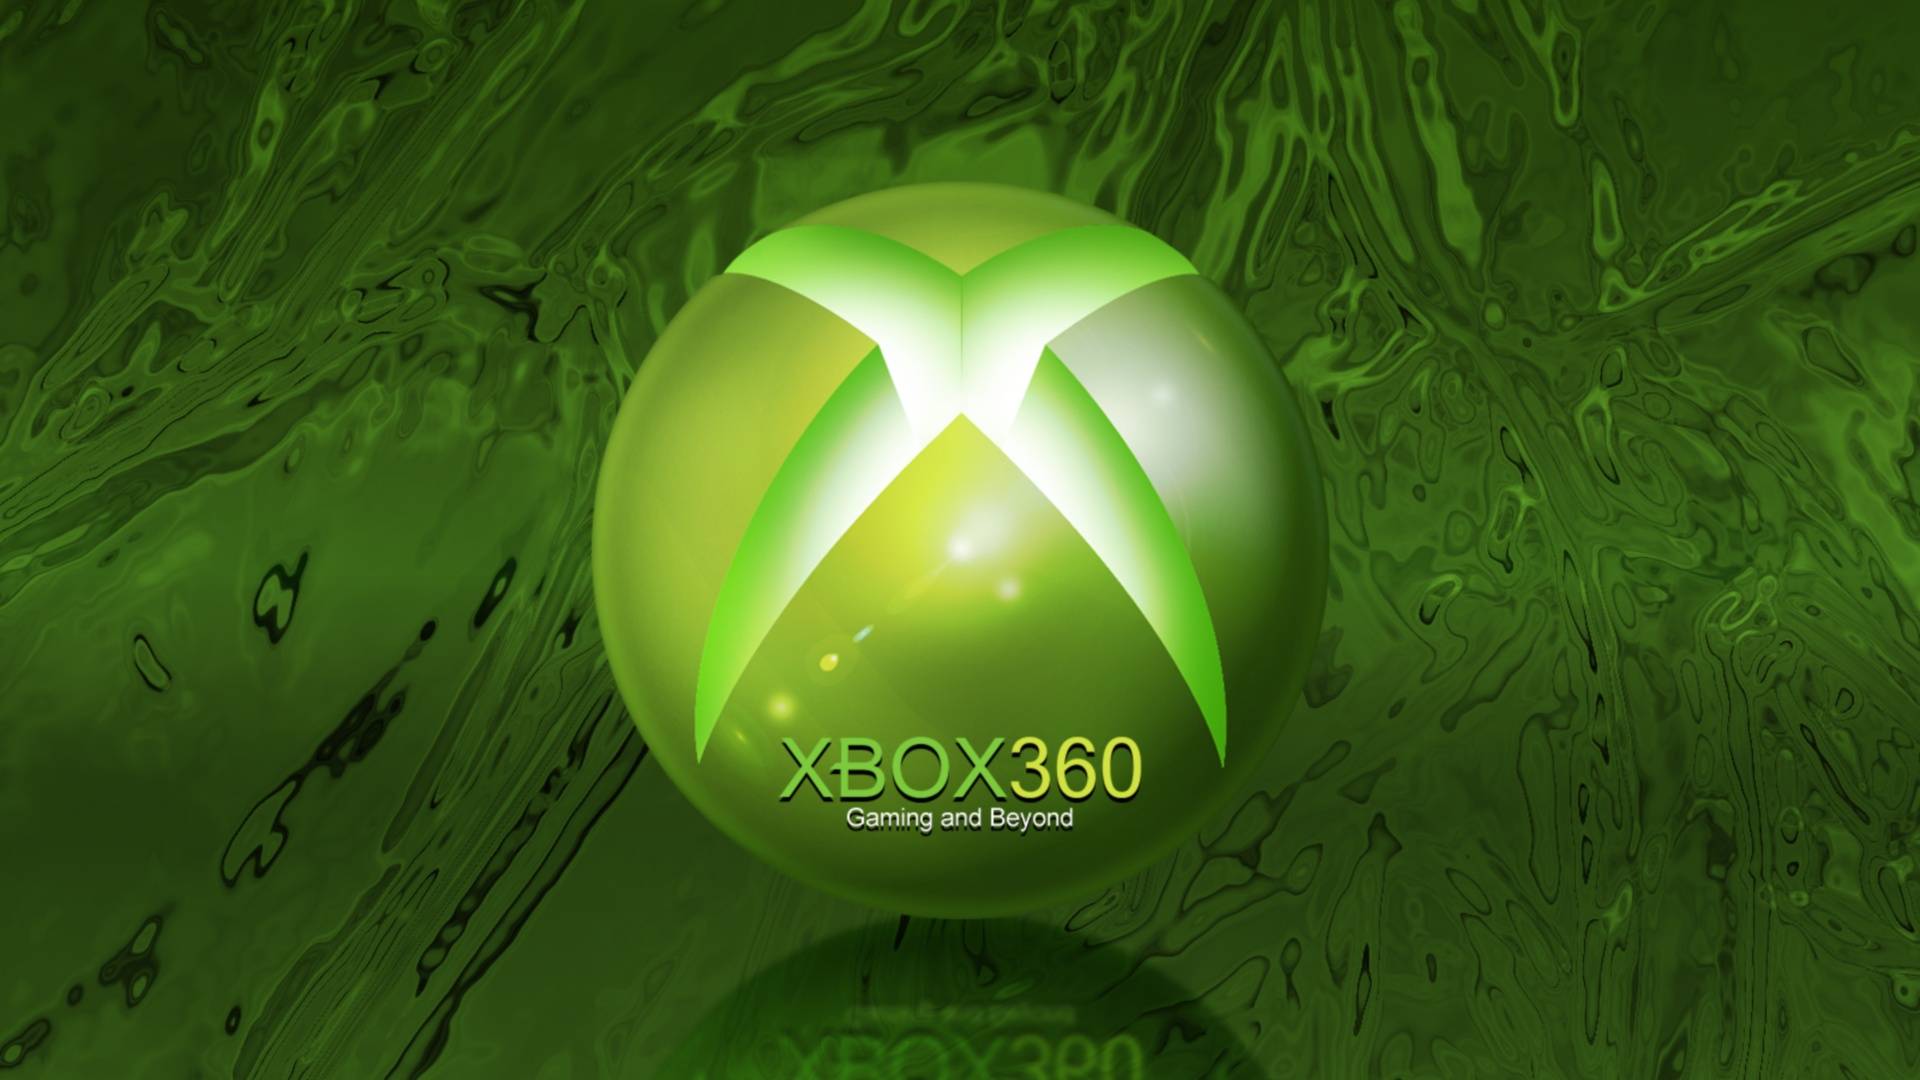 XBOX 360   Xbox Live Picture 1920x1080